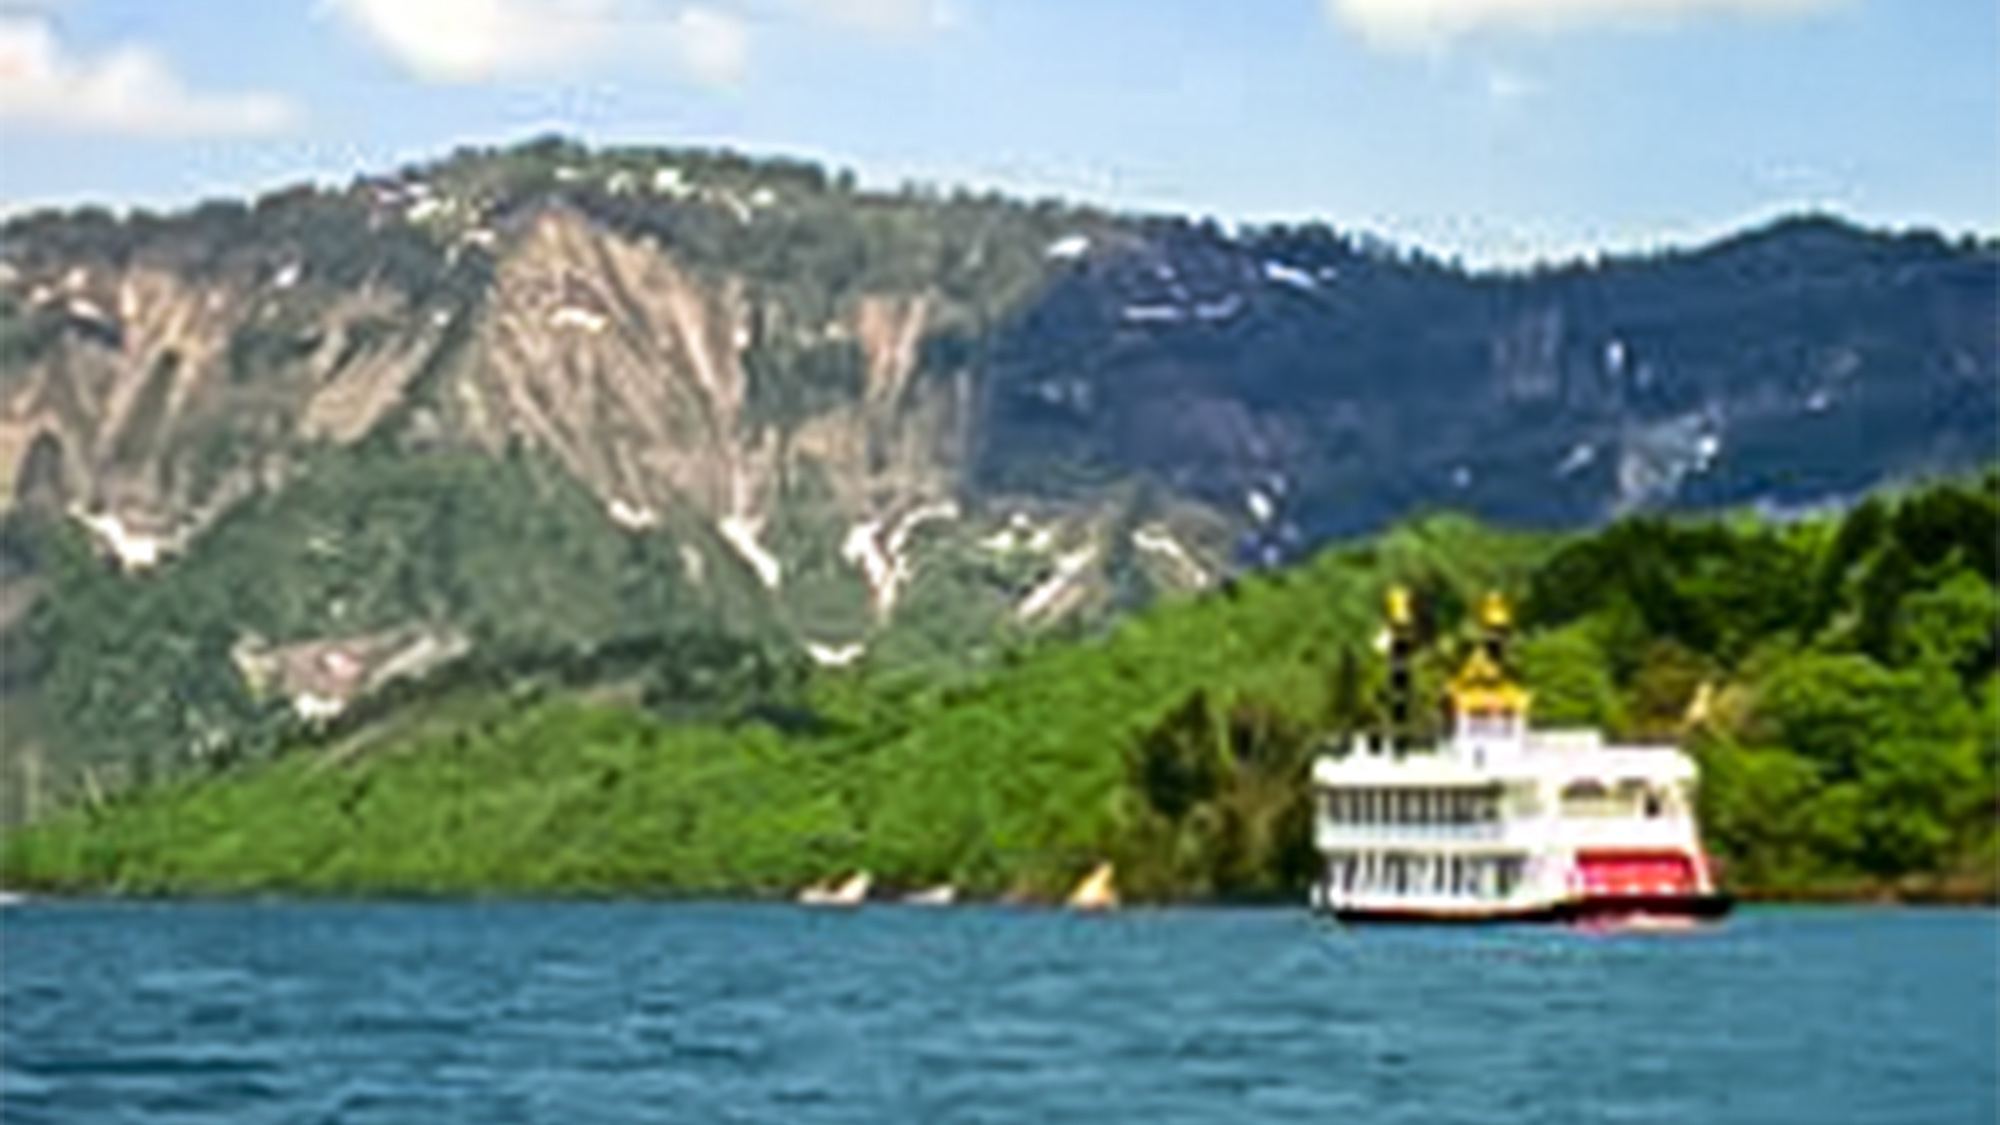 ・奥只見湖遊覧船越後湯沢観光の次の目的地としておすすめのスポットです